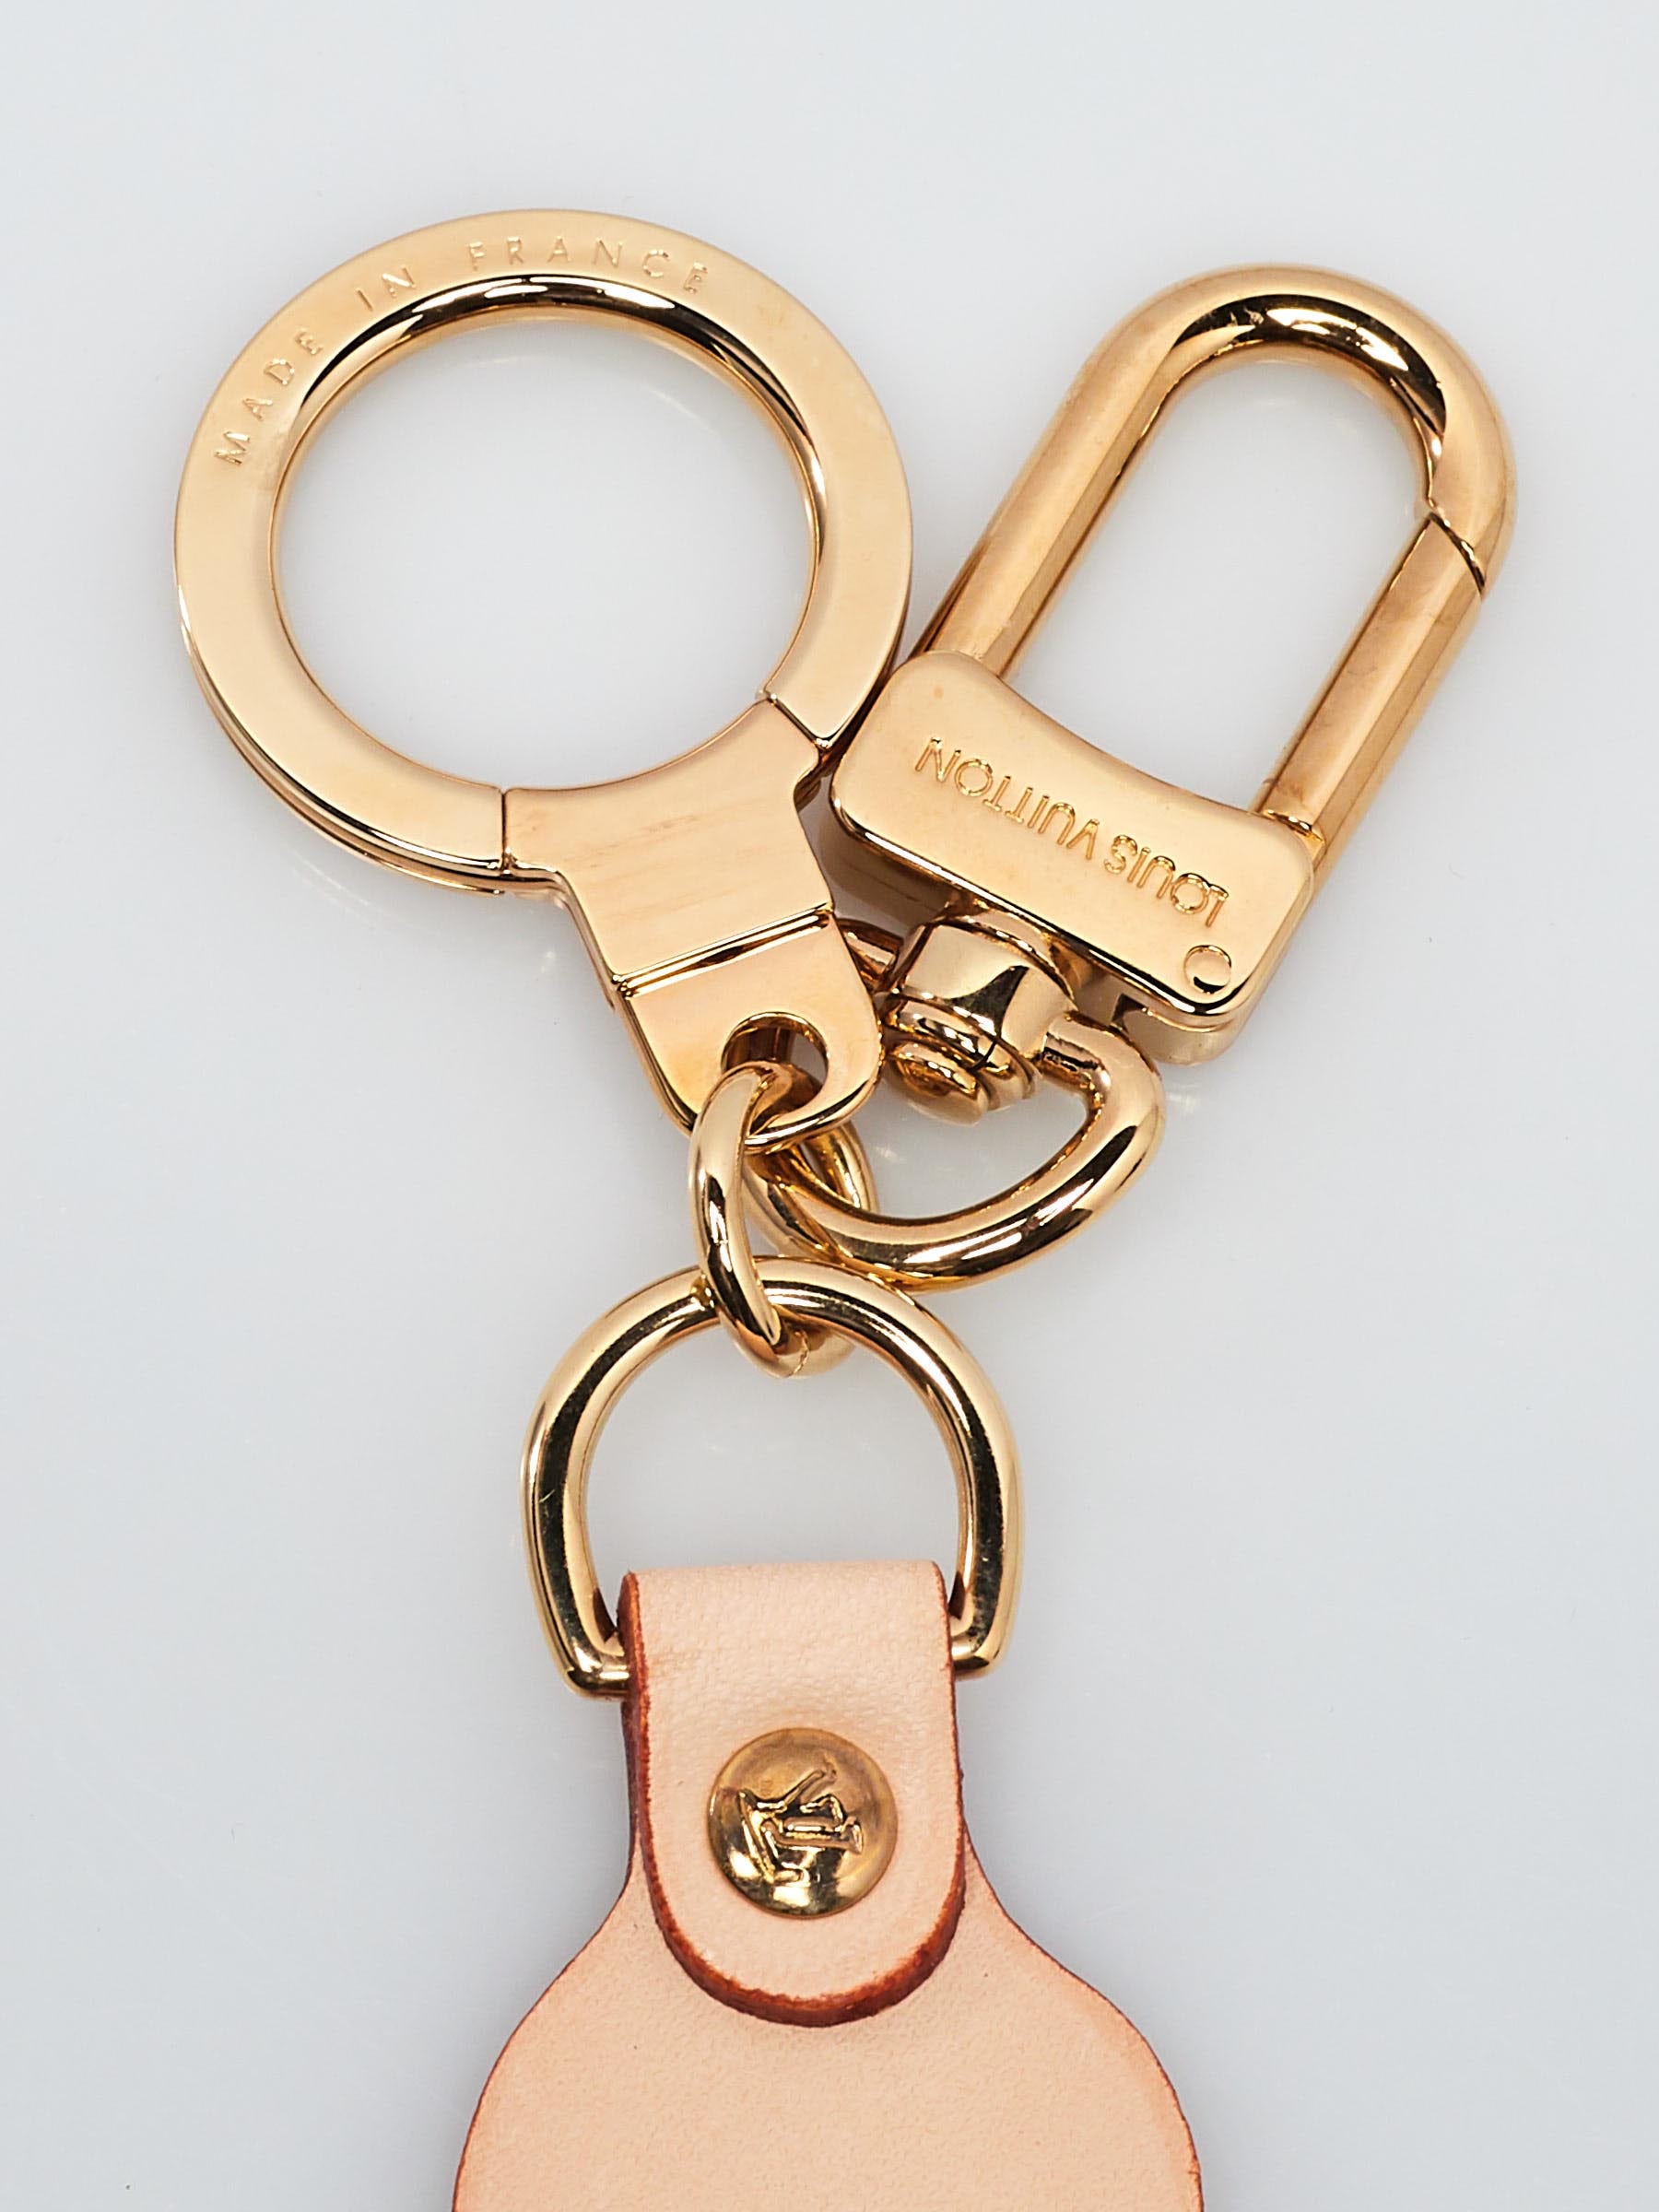 Louis Vuitton X Takashi Murakami Panda Key Chain Bag Charm – Fancy Lux